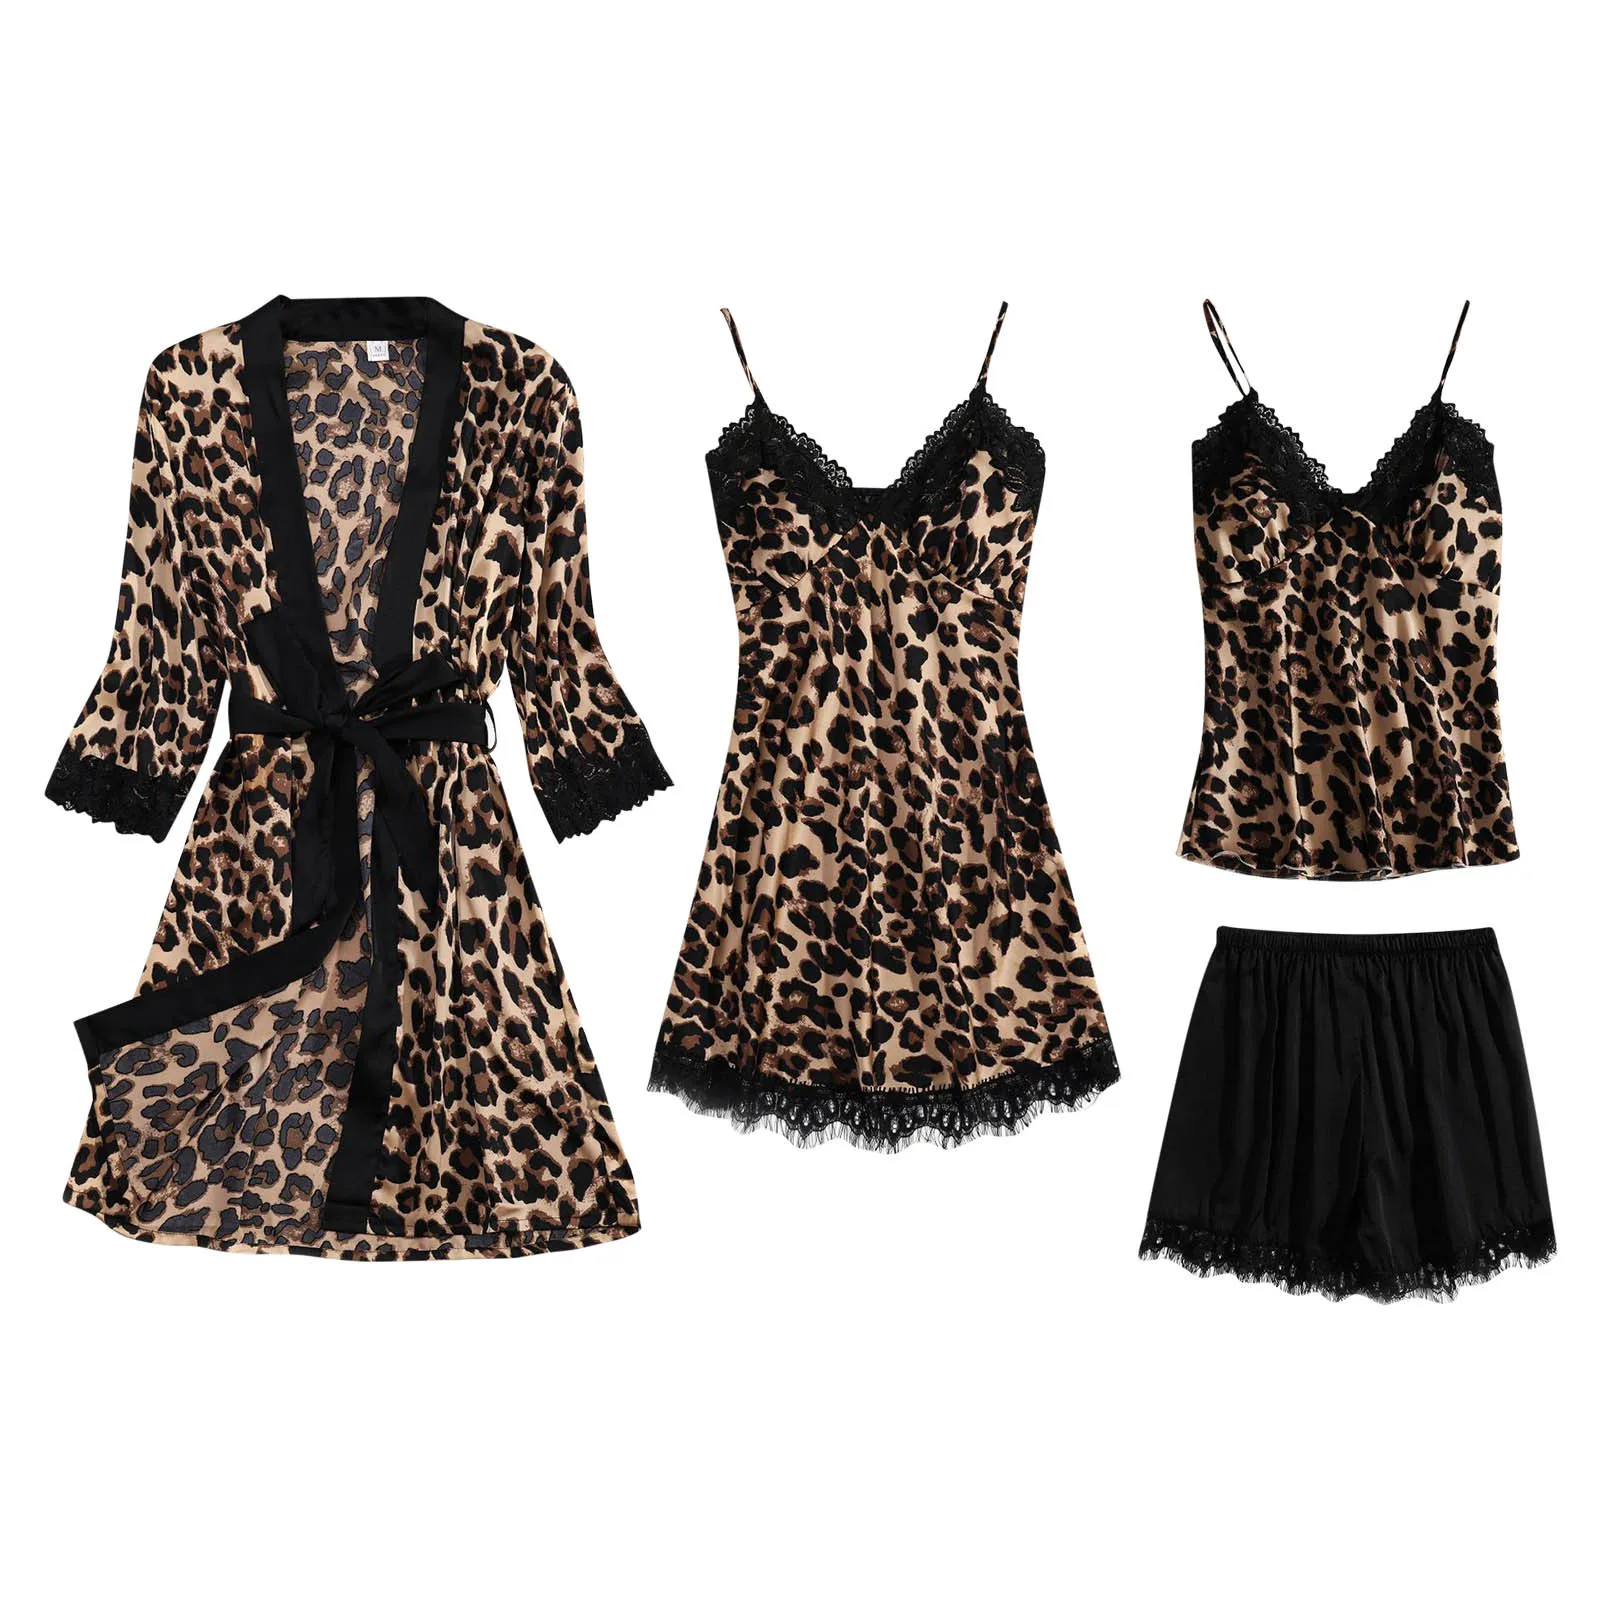 

Комплект пижамный женский леопардовый из 4 предметов, халатик и топ на бретелях, кимоно, одежда для сна, домашняя одежда, ночная рубашка, рубашка, размеры s-xxl